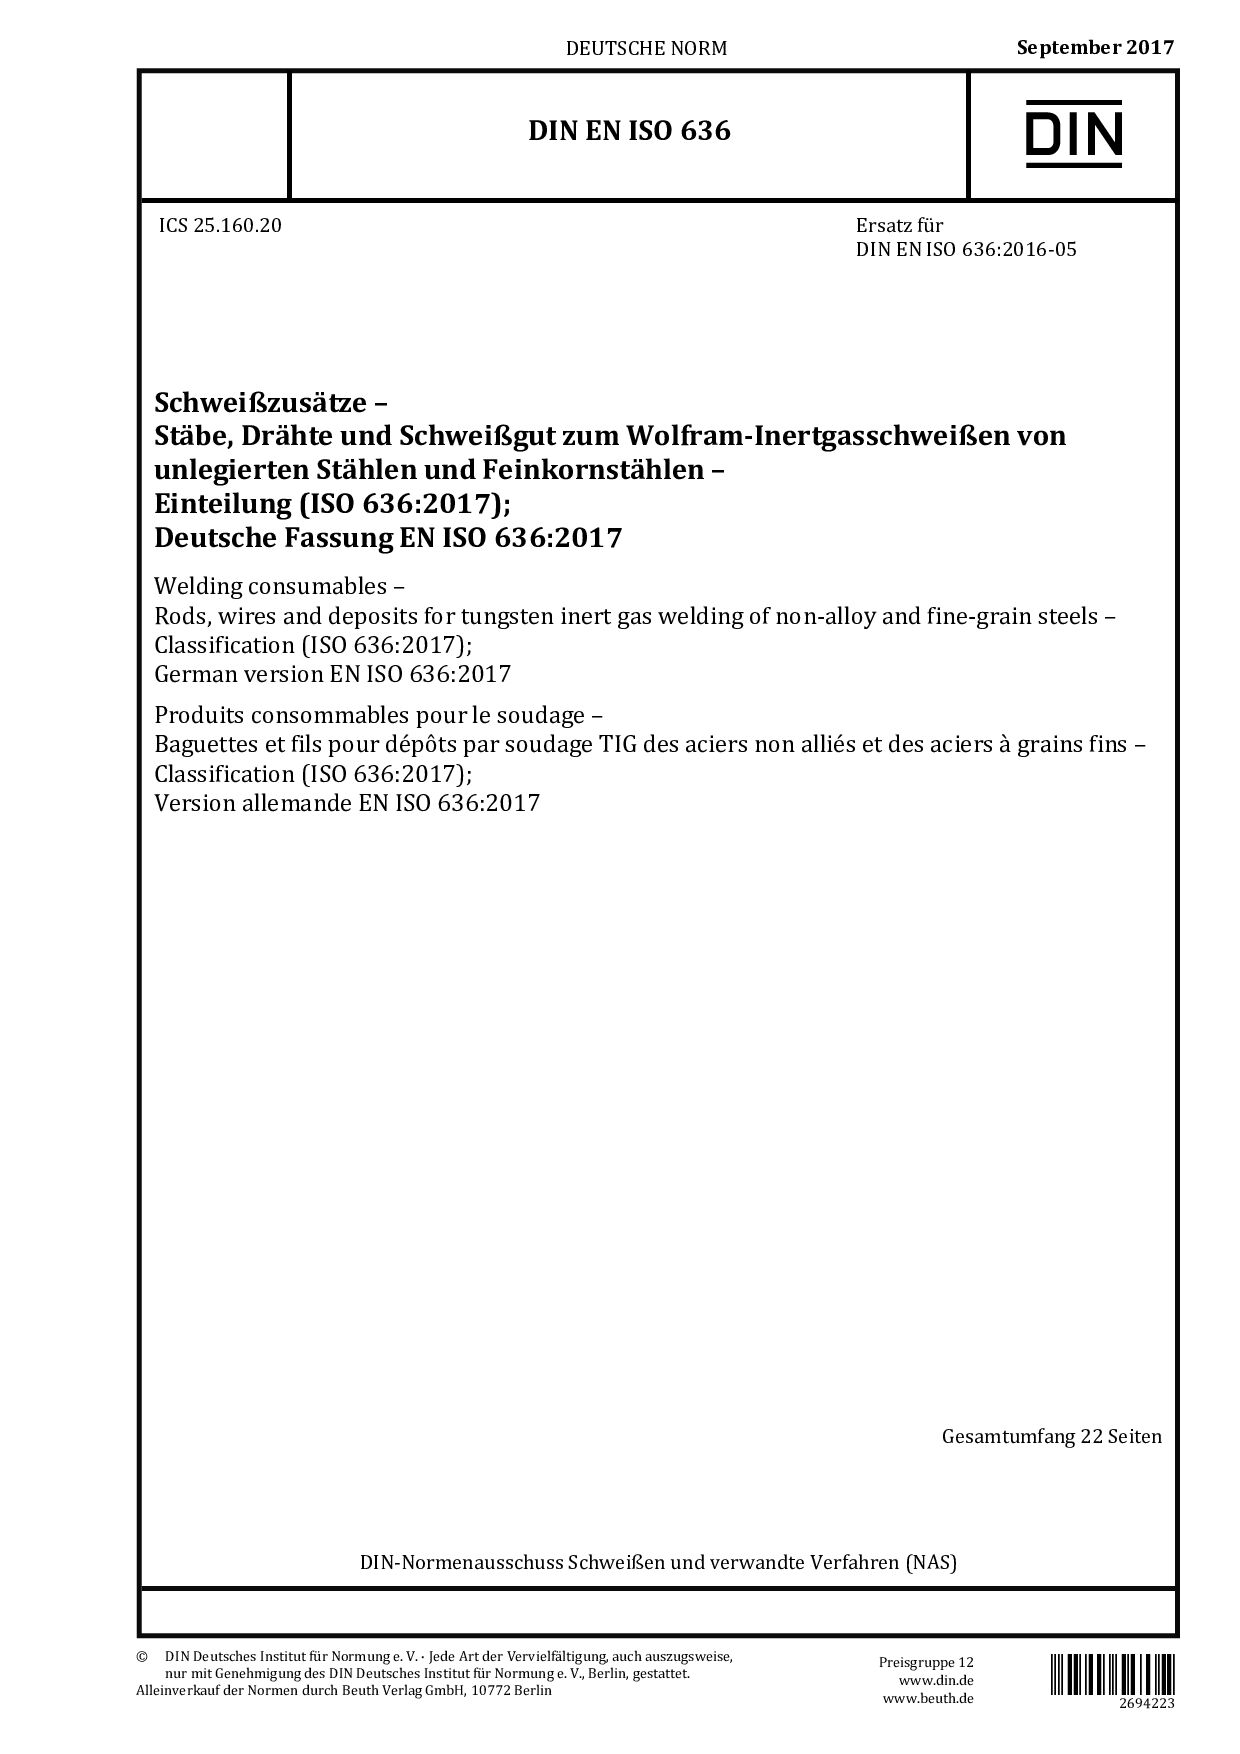 DIN EN ISO 636:2017封面图